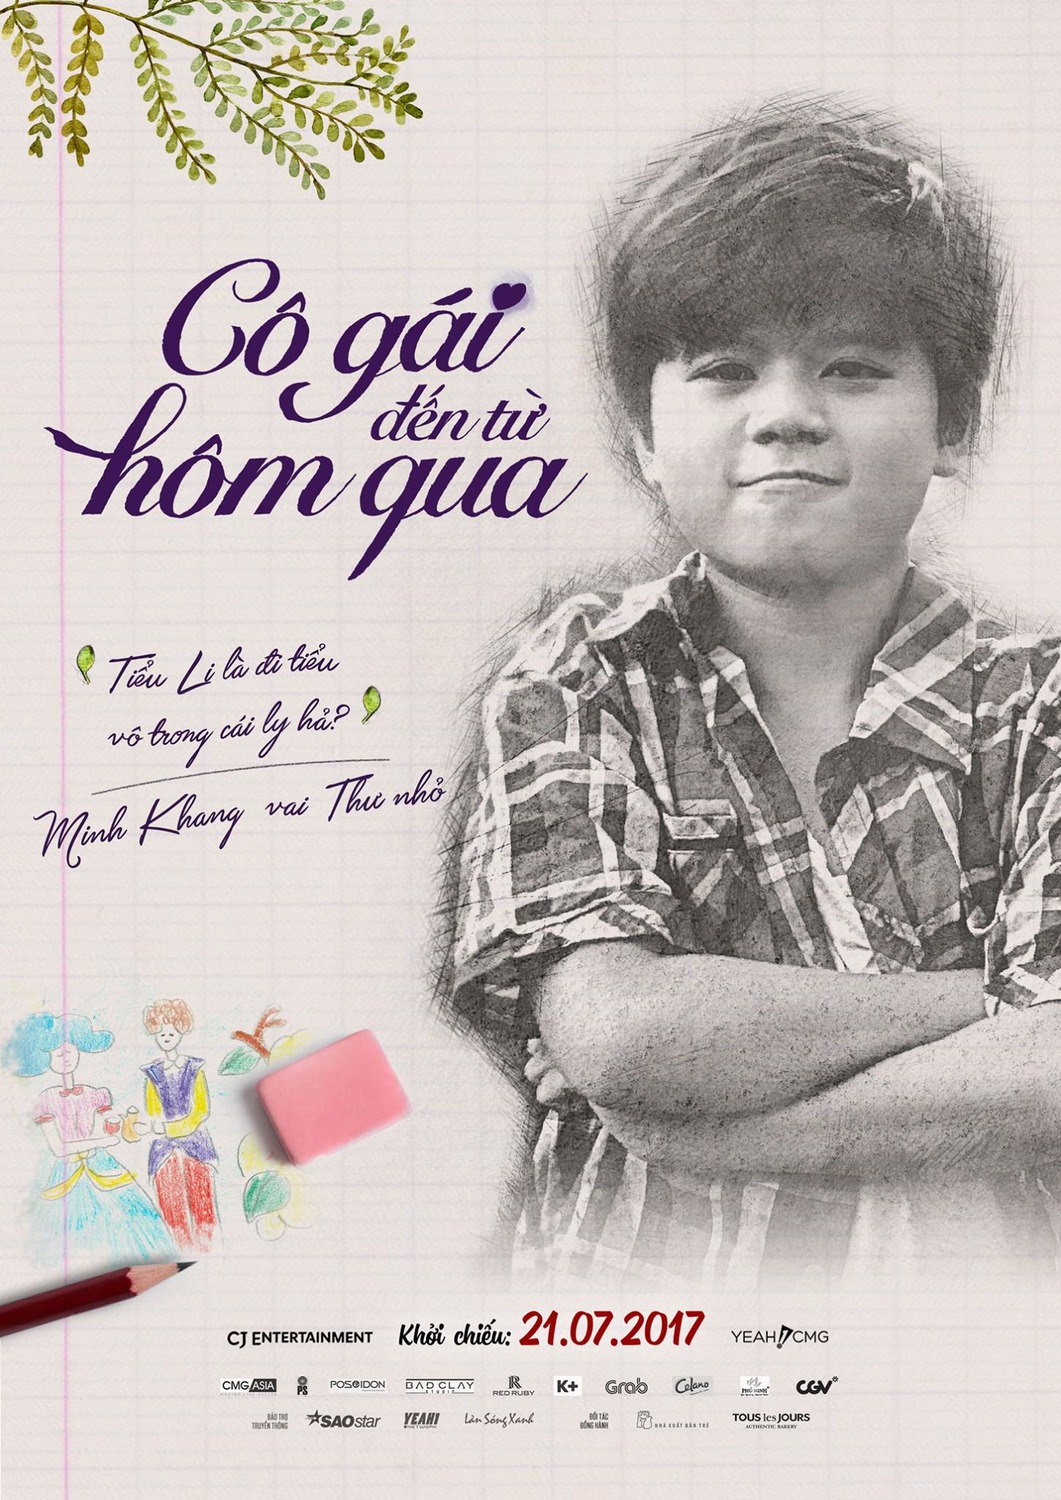 Extra Large Movie Poster Image for Co gai den tu hom qua (#12 of 14)